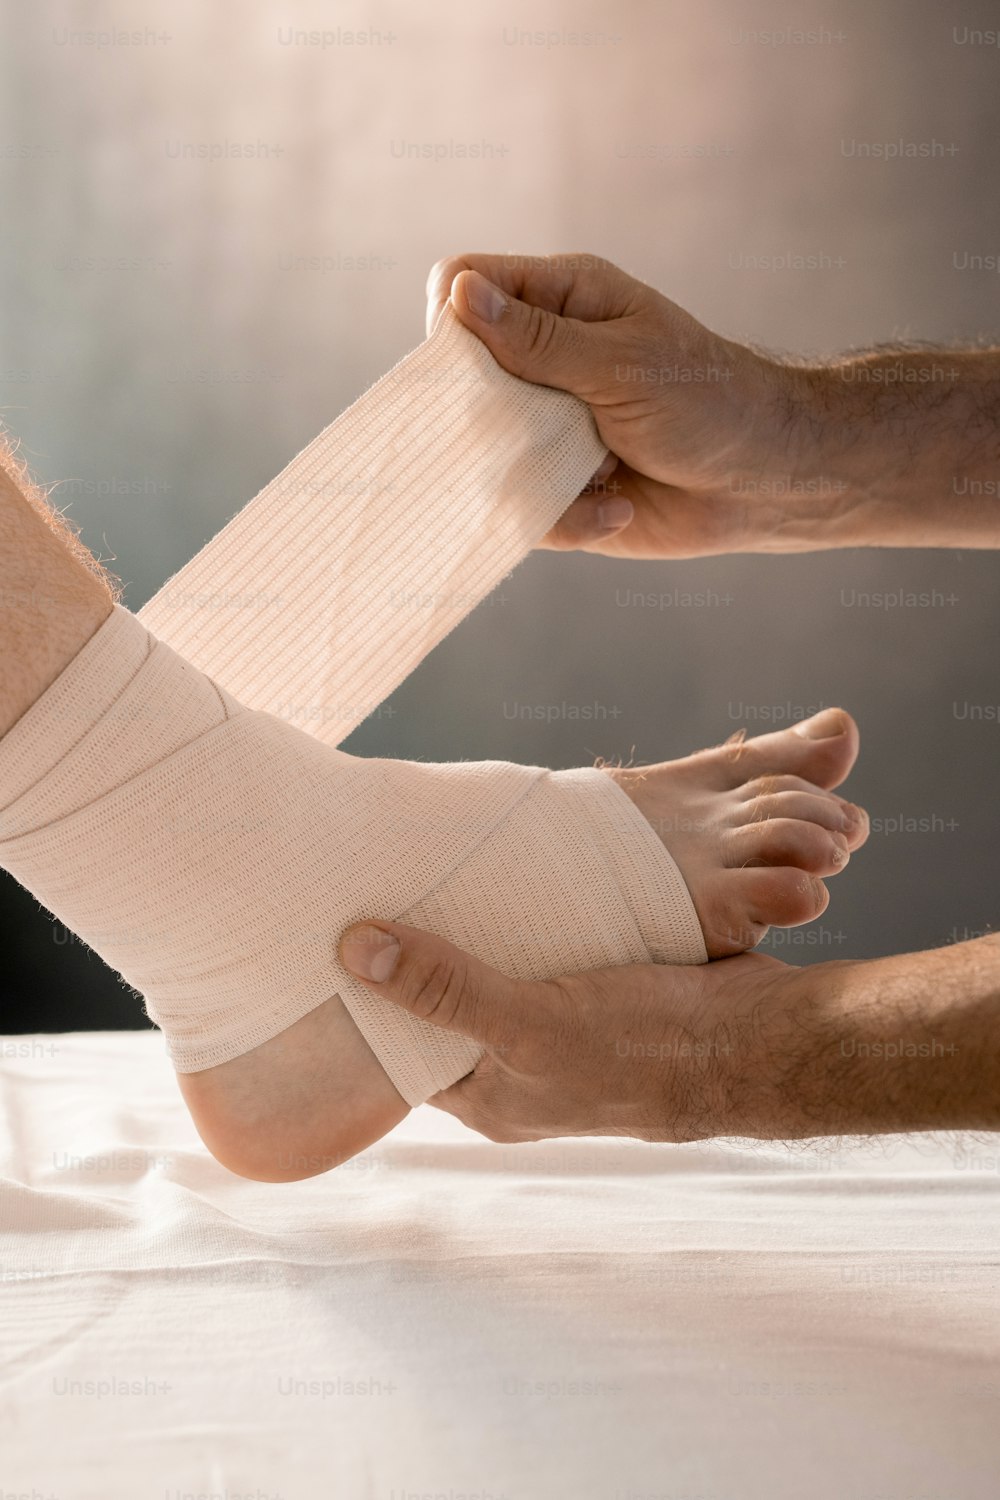 診療所での医療処置中に柔軟な包帯で包む間、足が病気の男性患者の足を保持する臨床医の手